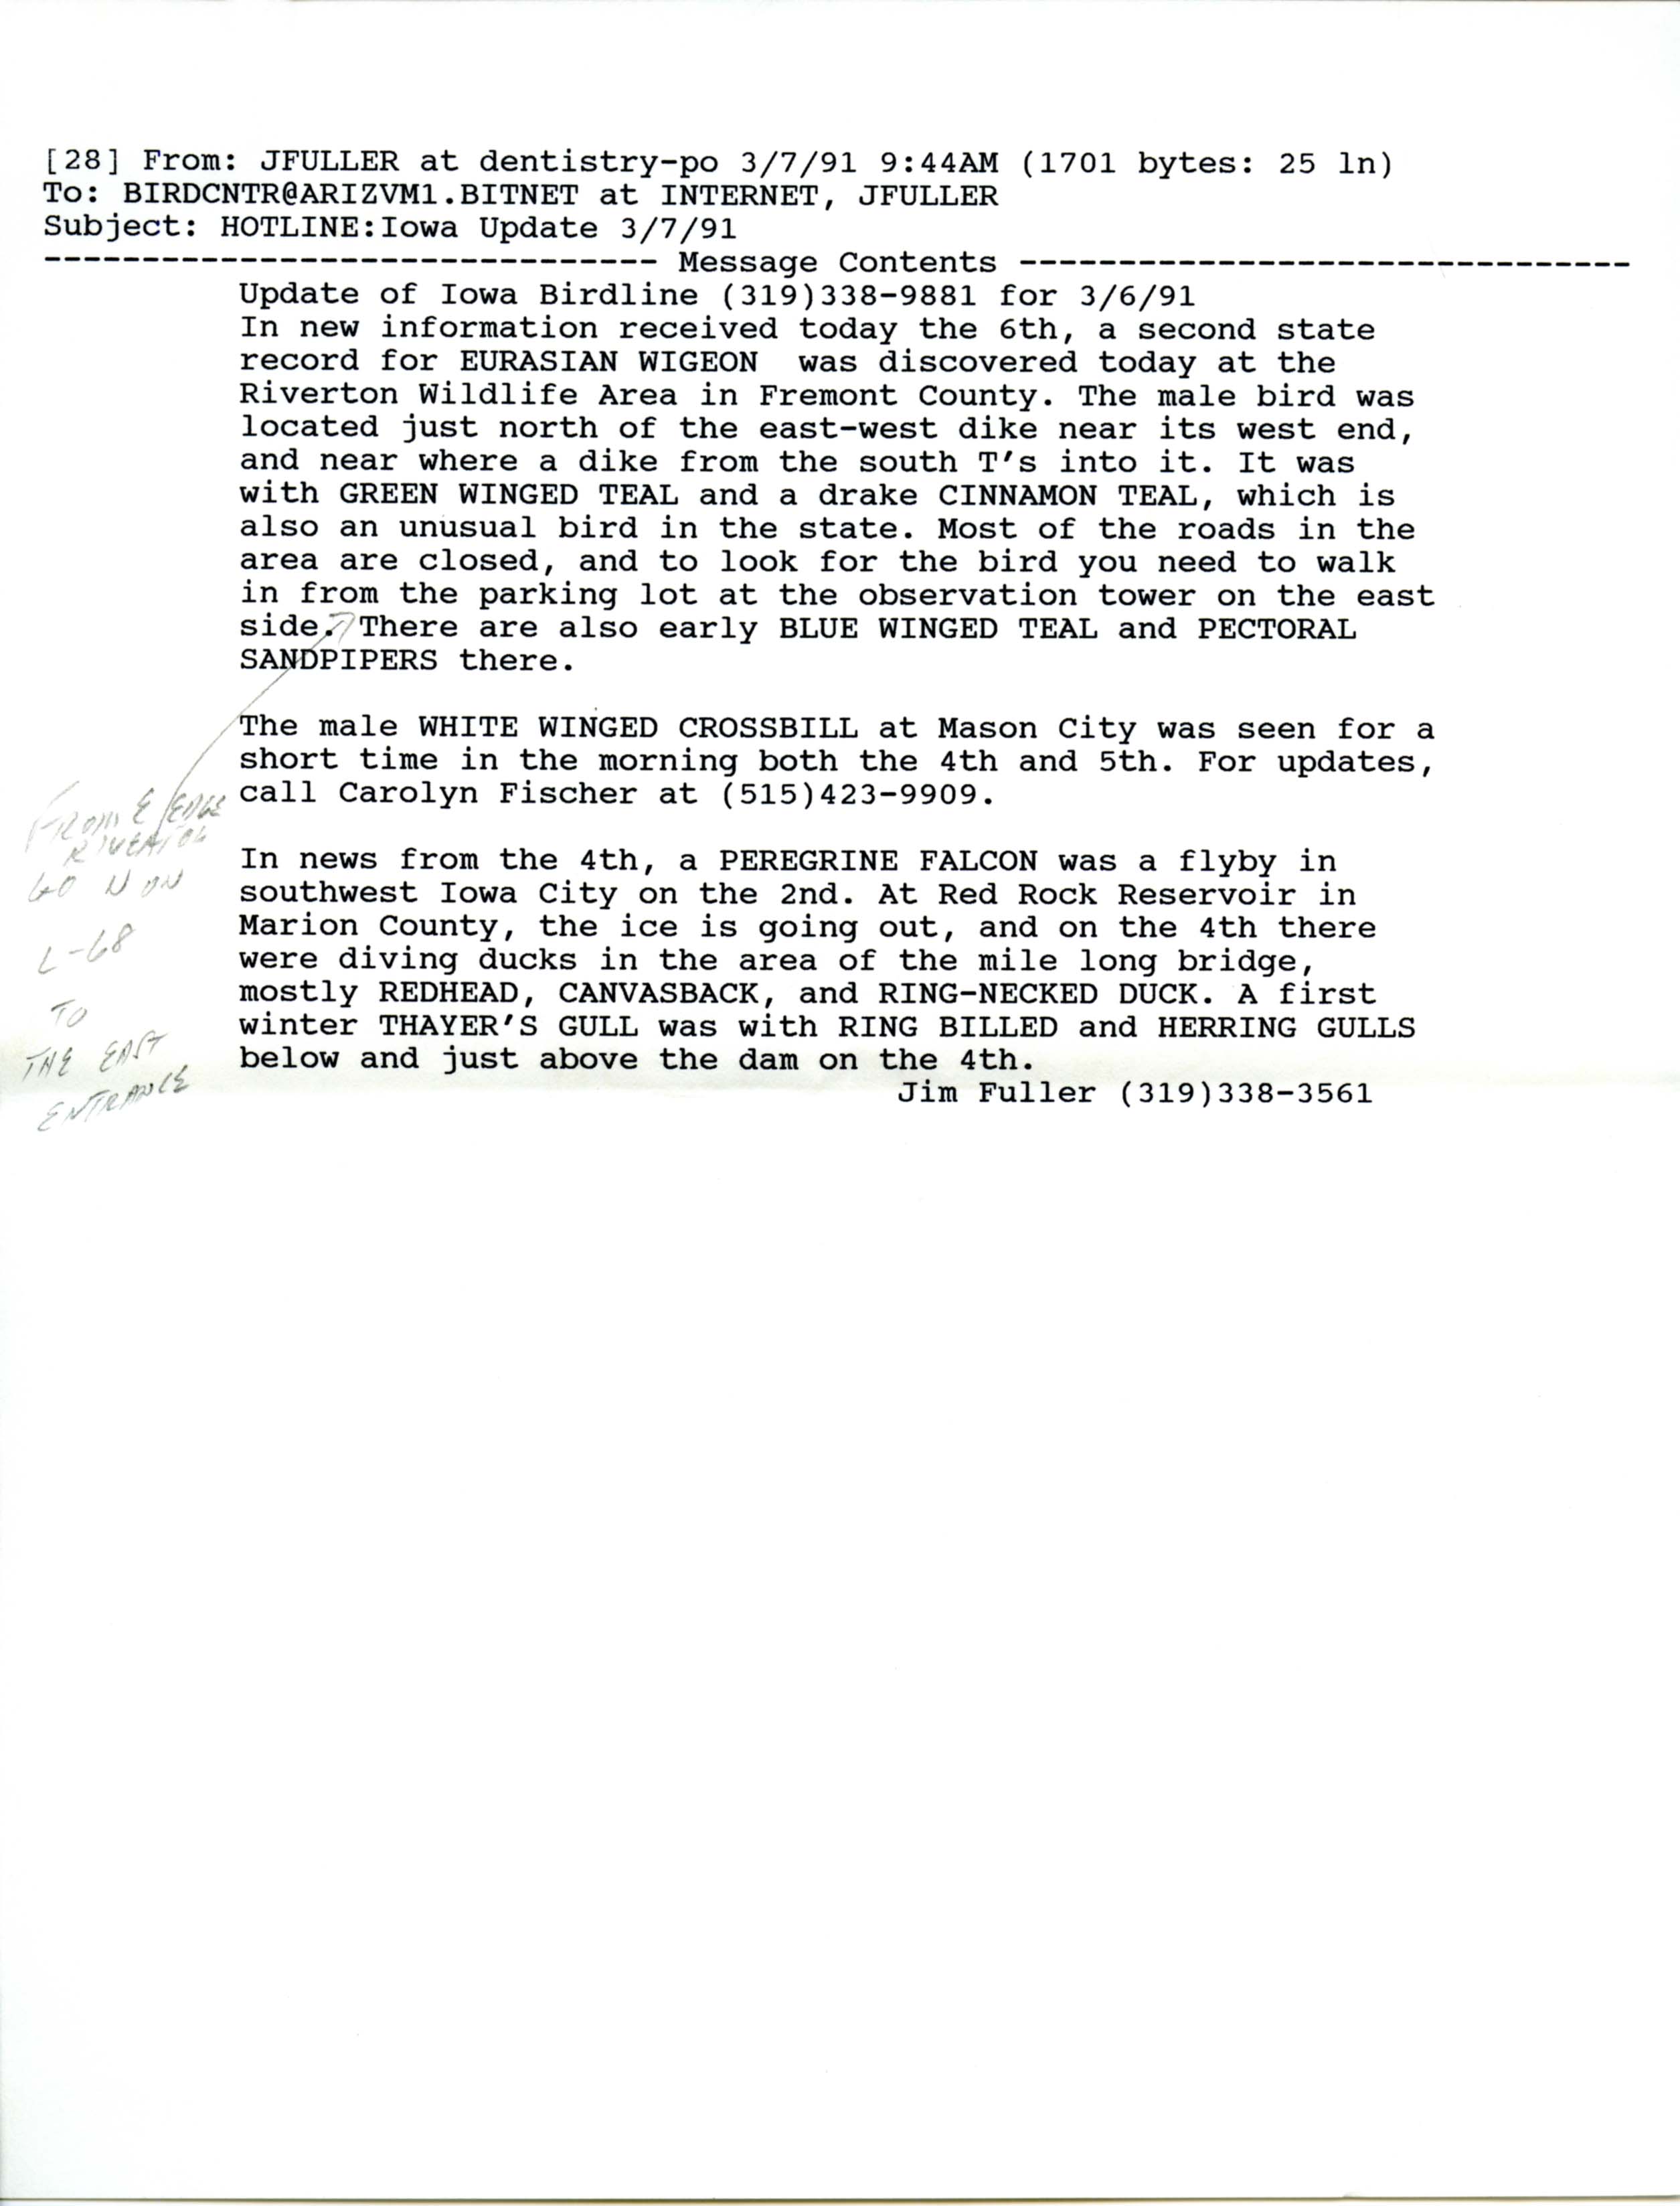 Iowa Birdline update, March 4, 1991